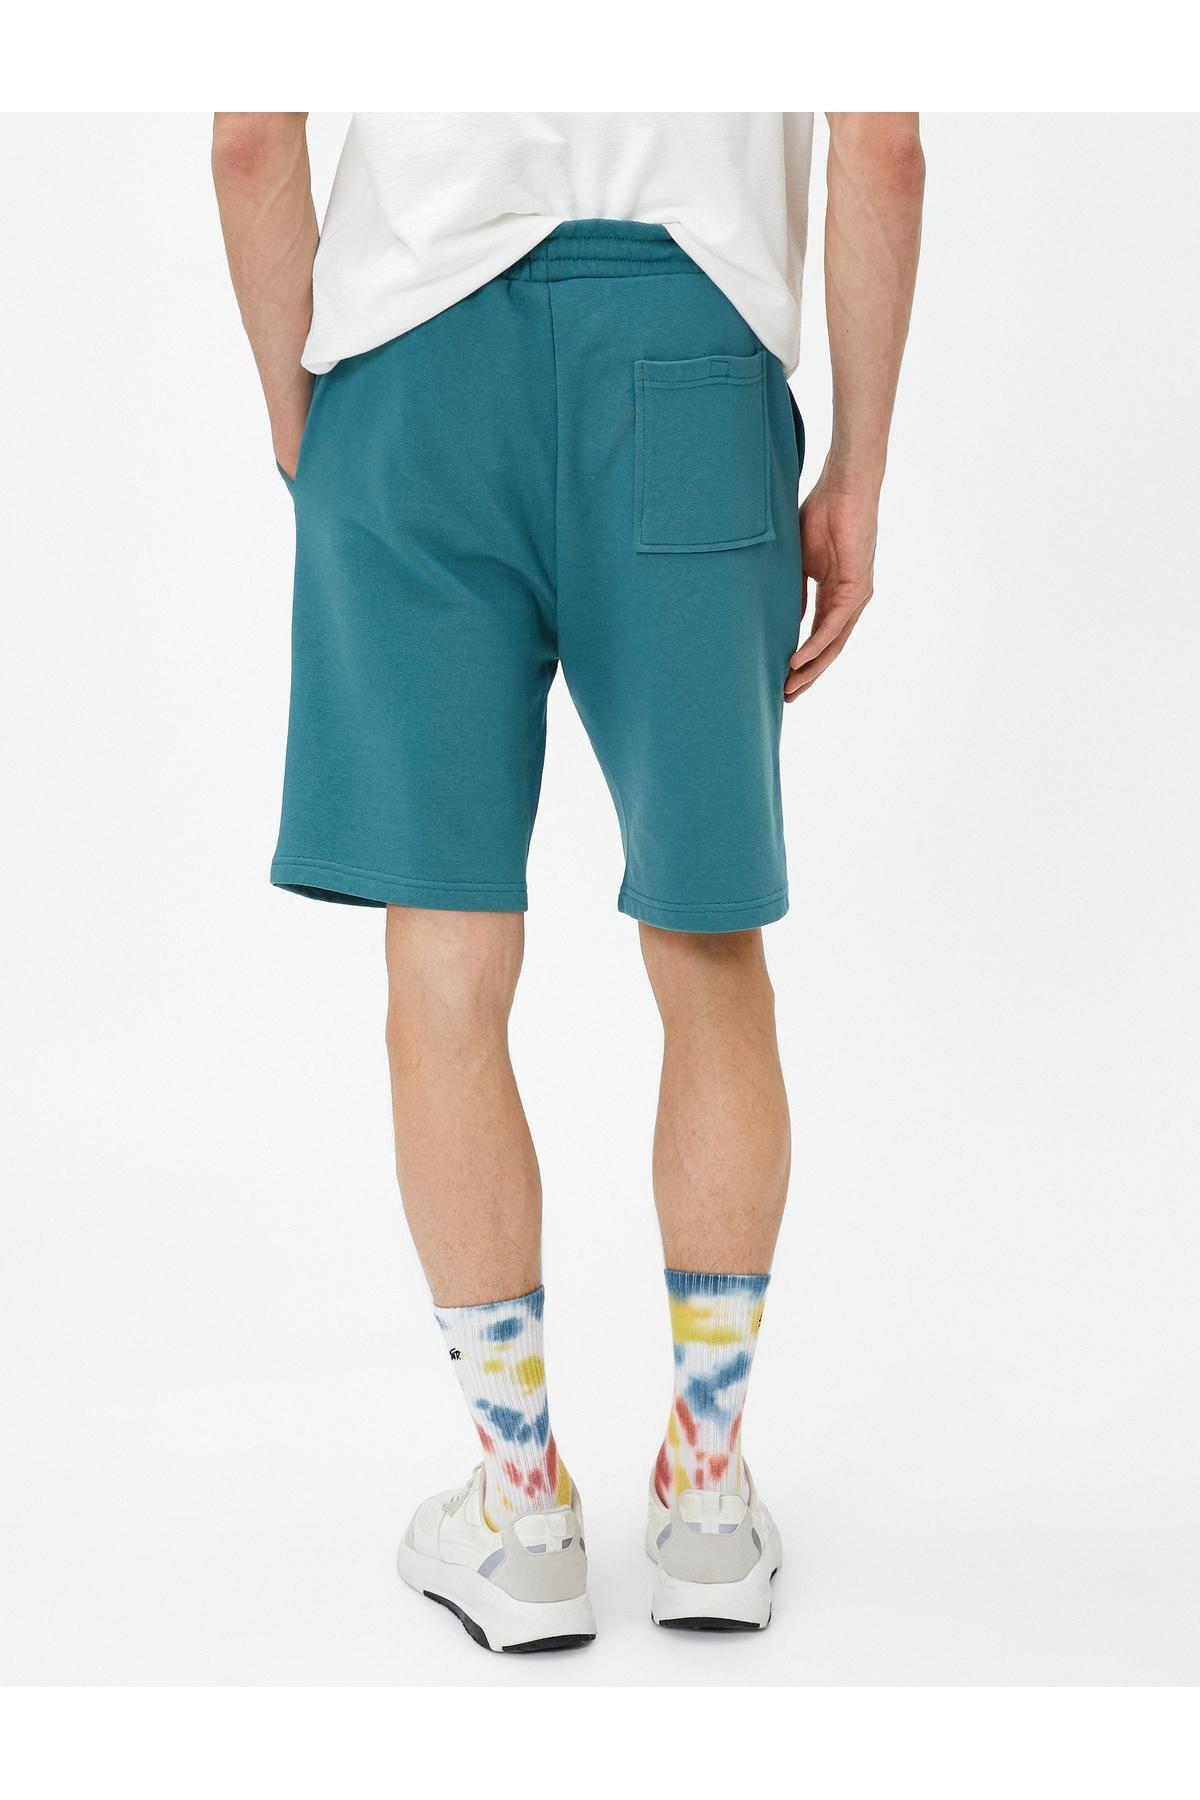 Koton - Green Printed Detailed Shorts